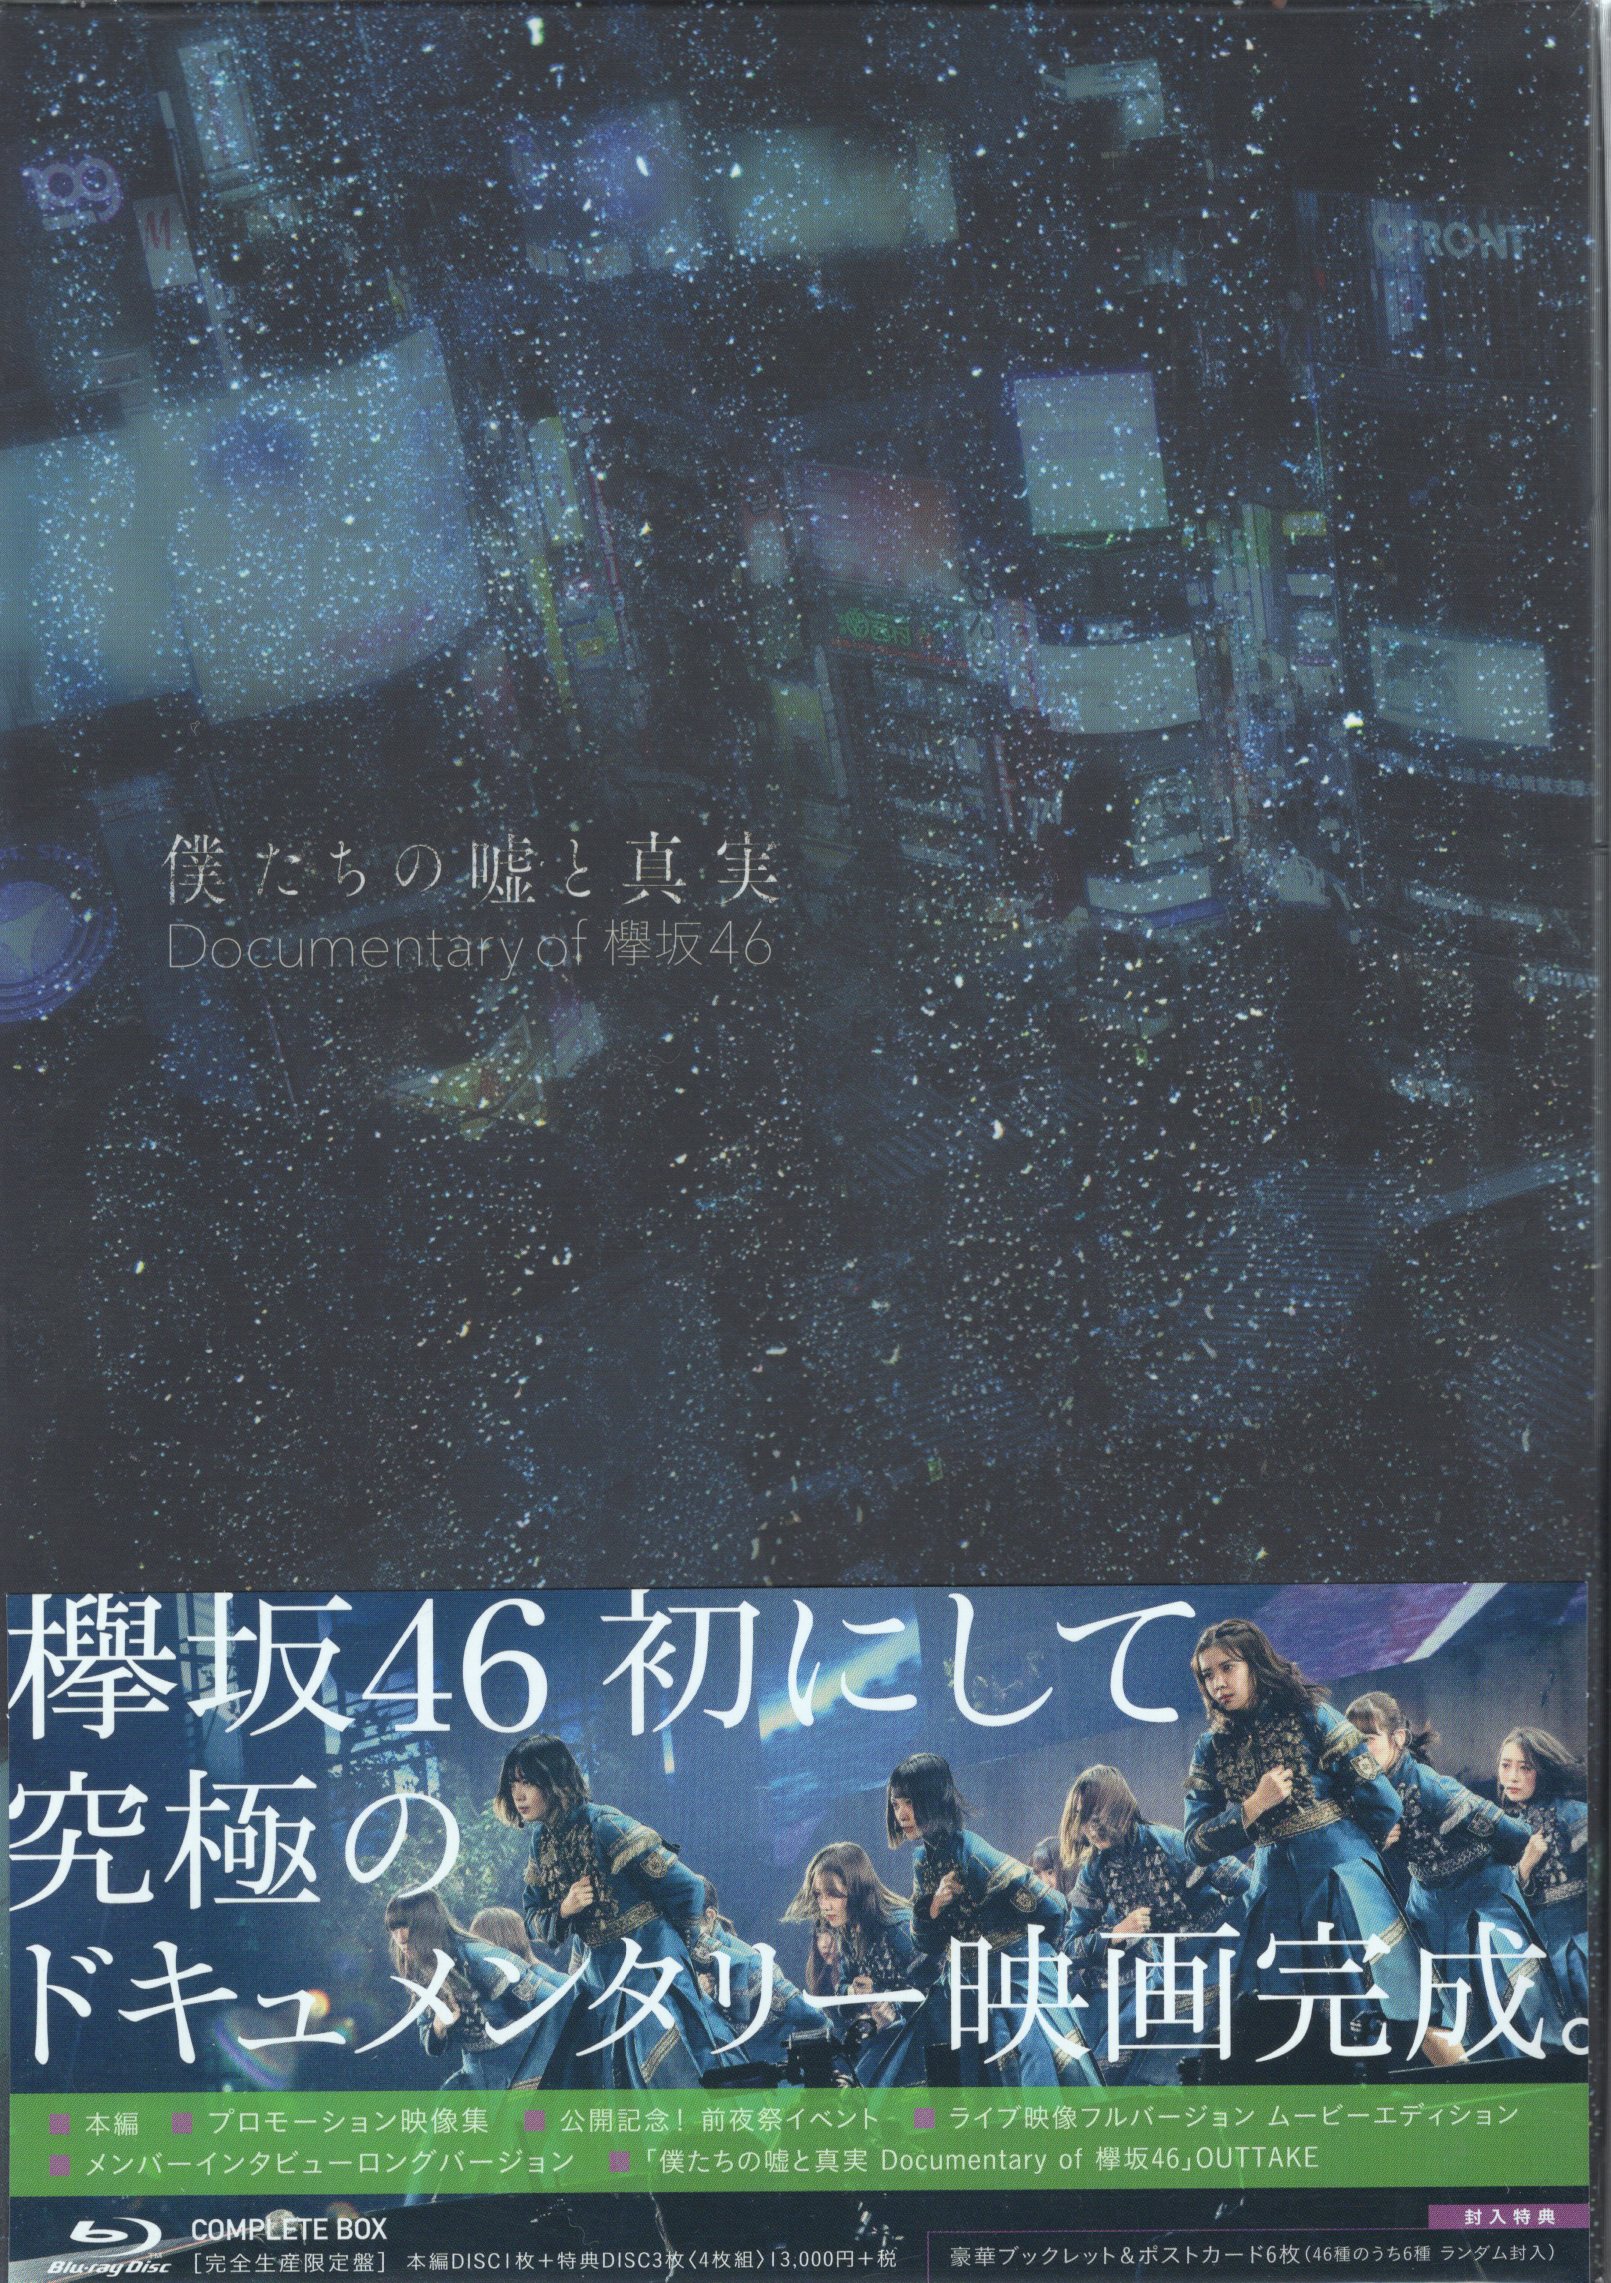 欅坂46(けやき坂46) - 僕たちの嘘と真実 Documentary of 欅坂46 Blu